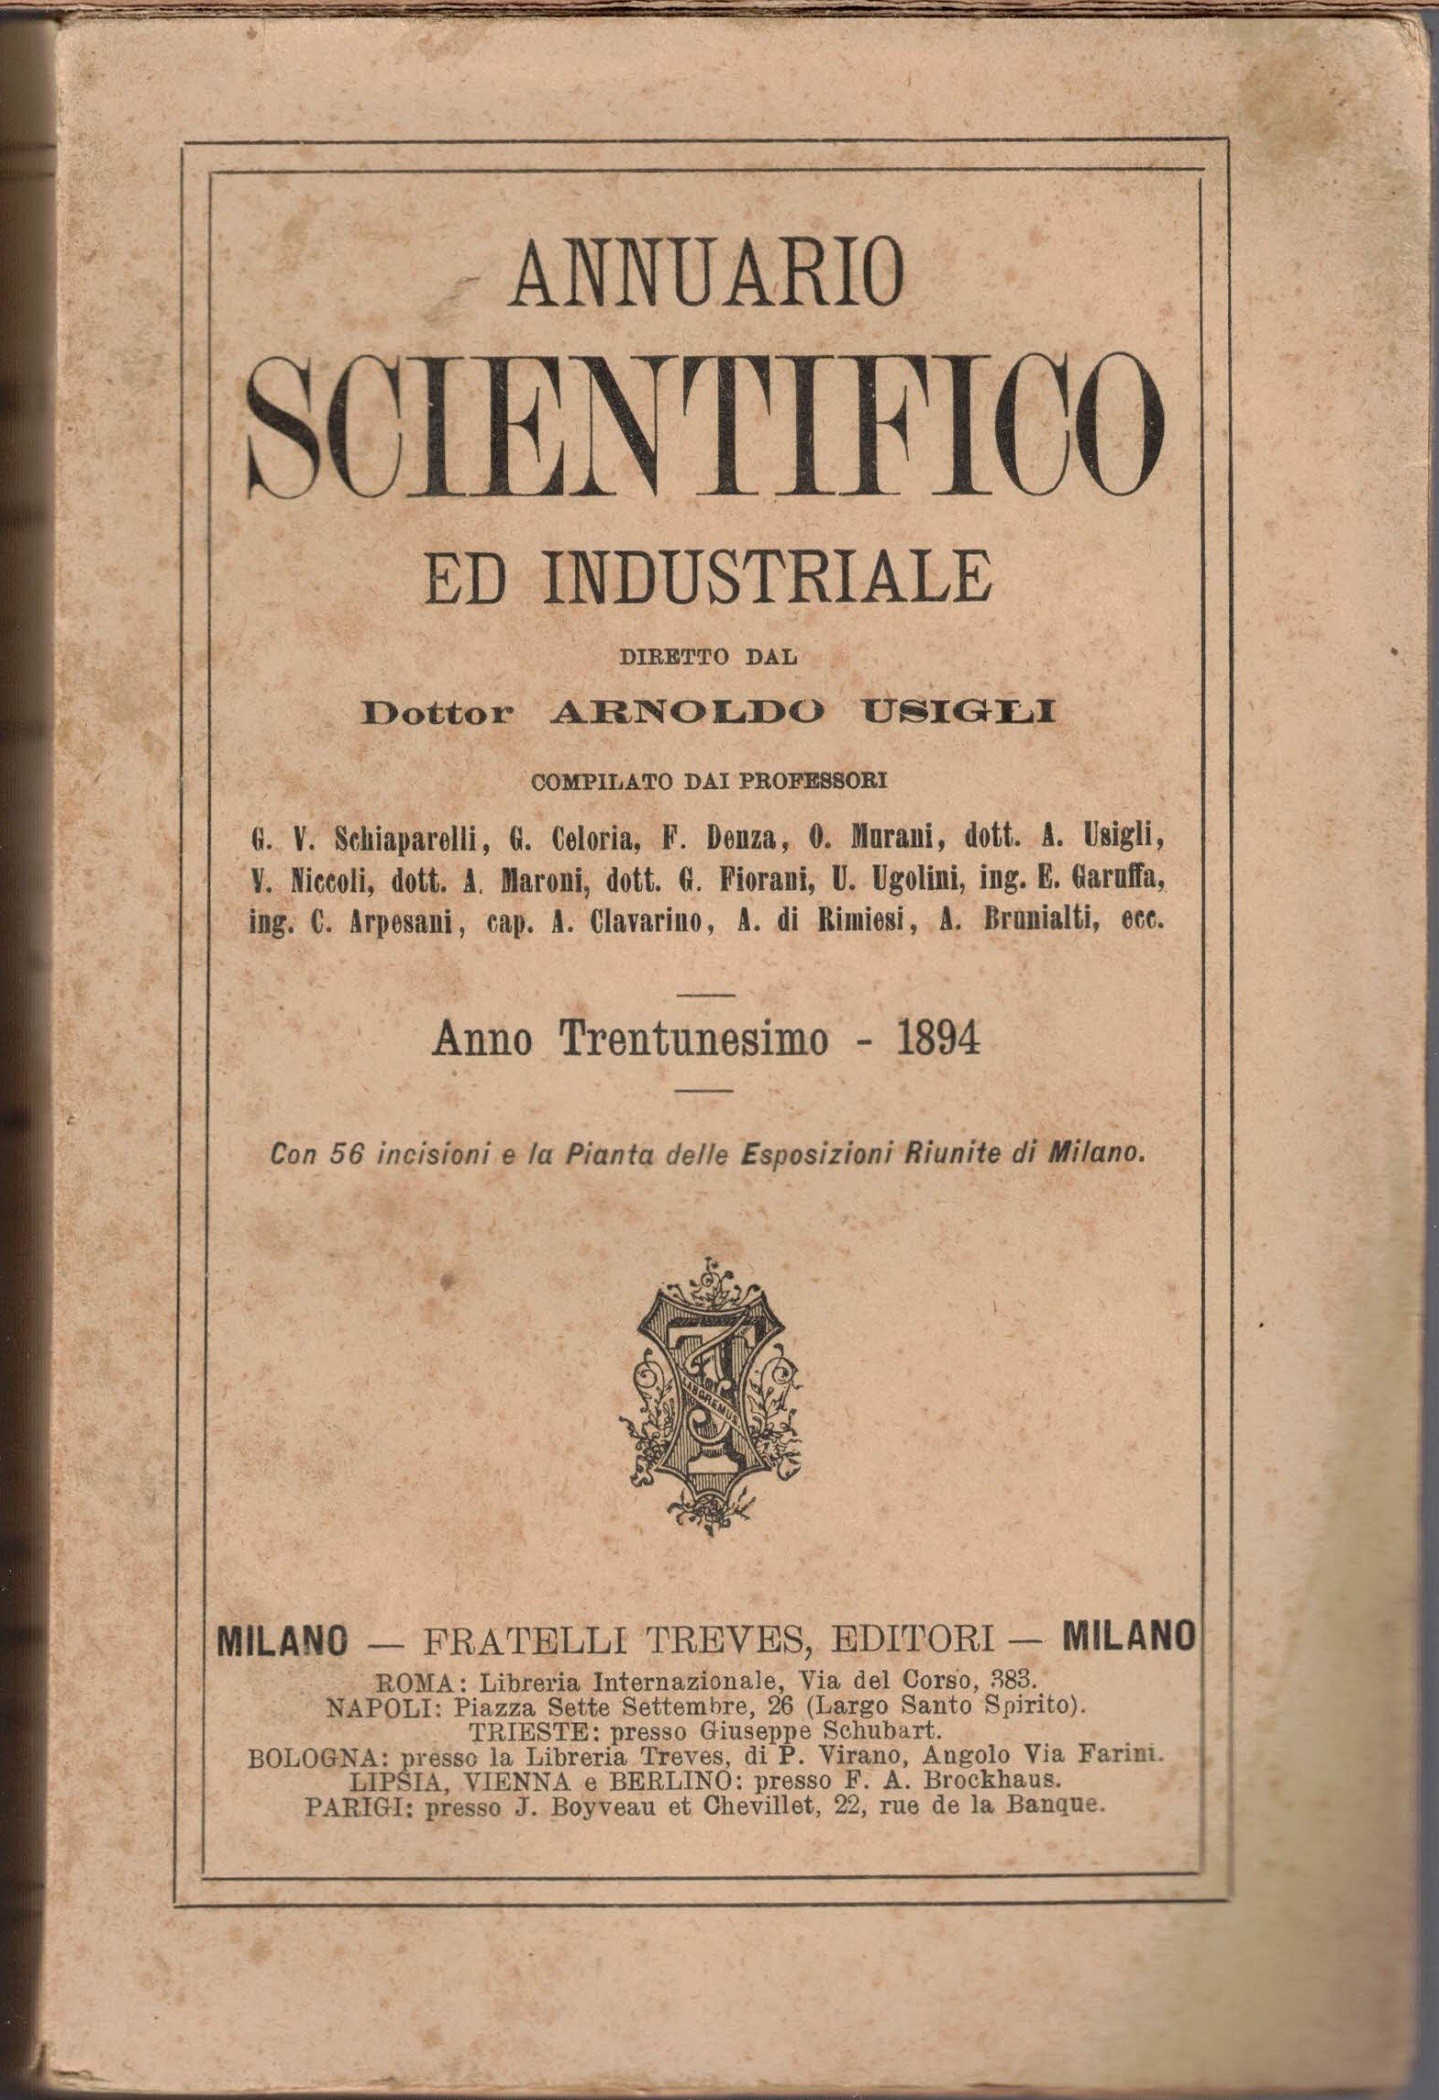 Annuario scientifico ed industriale, a. XXXI, 1894